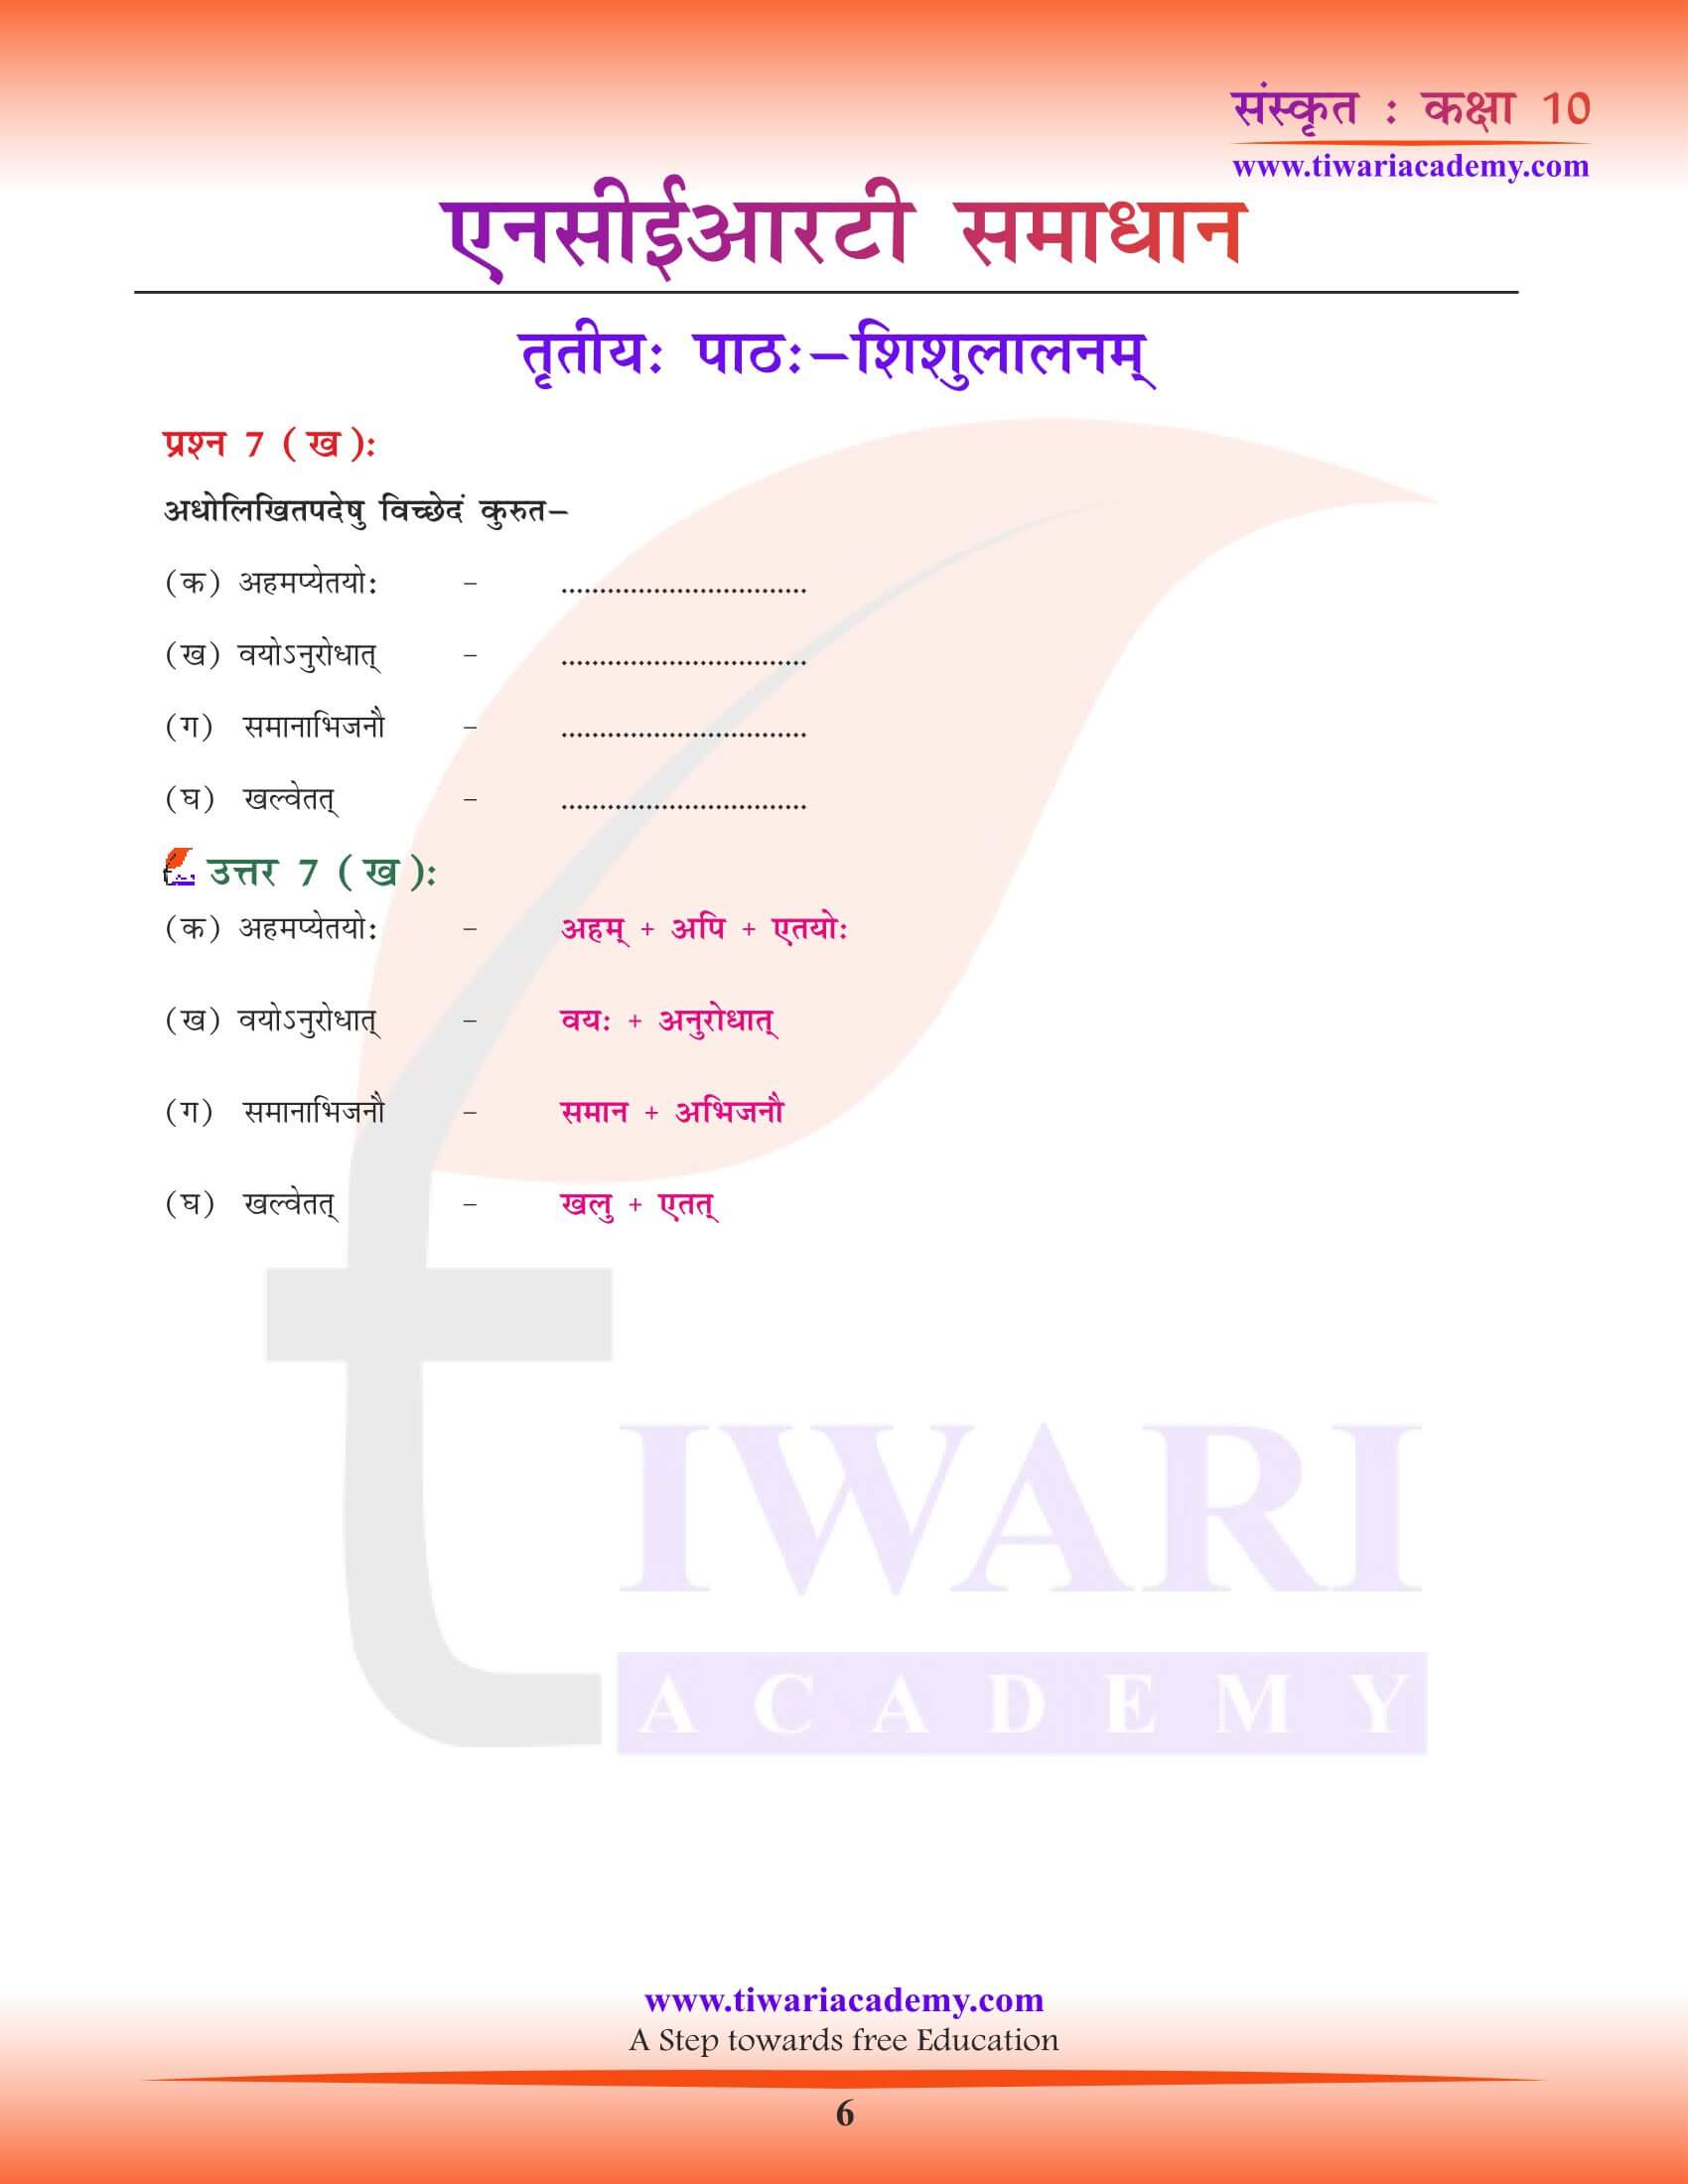 कक्षा 10 संस्कृत पाठ 3 के प्रश्न उत्तर हिंदी में